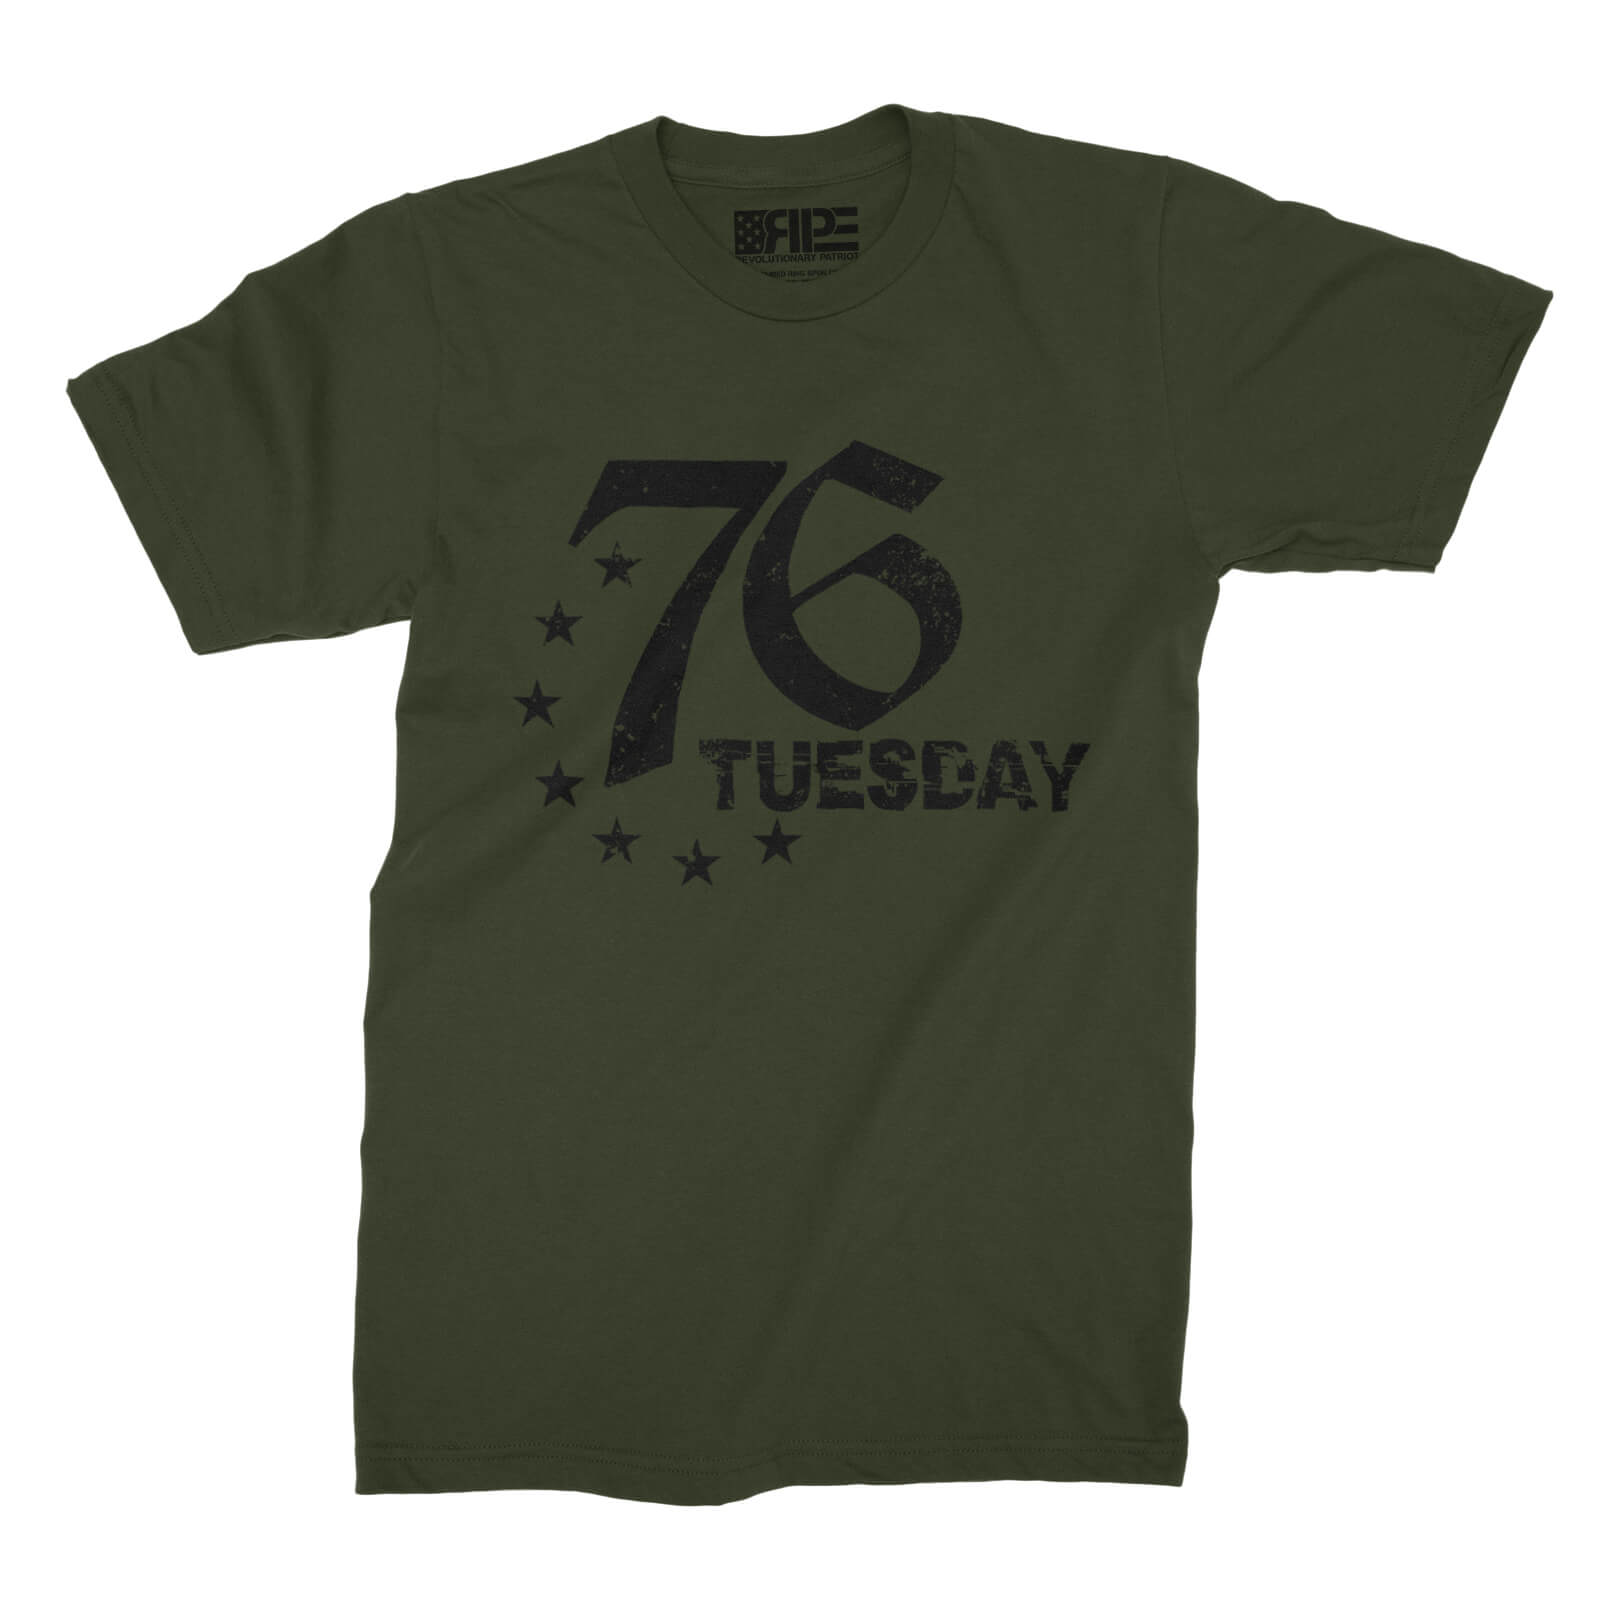 76 Tuesday (Army) - Revolutionary Patriot